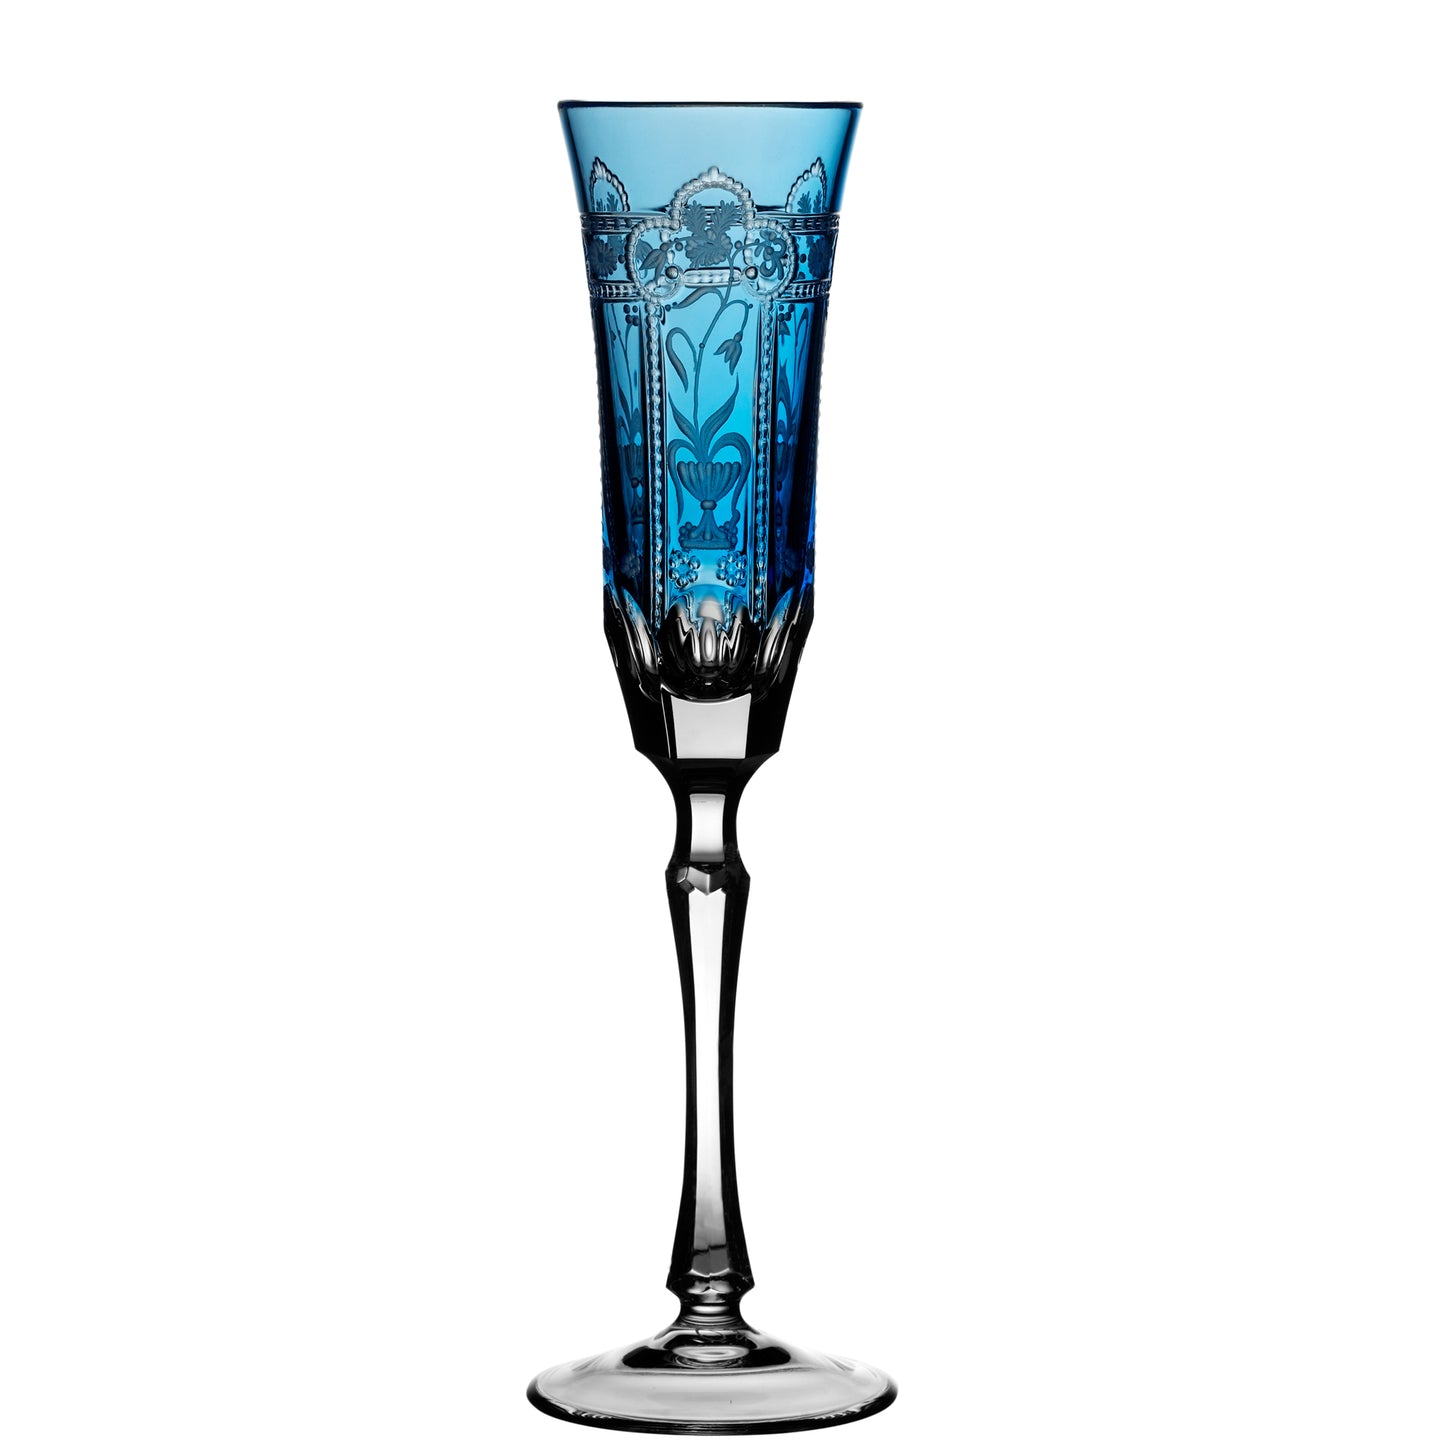 Varga Crystal Imperial Sky Blue Champagne Flute Pressed Stem